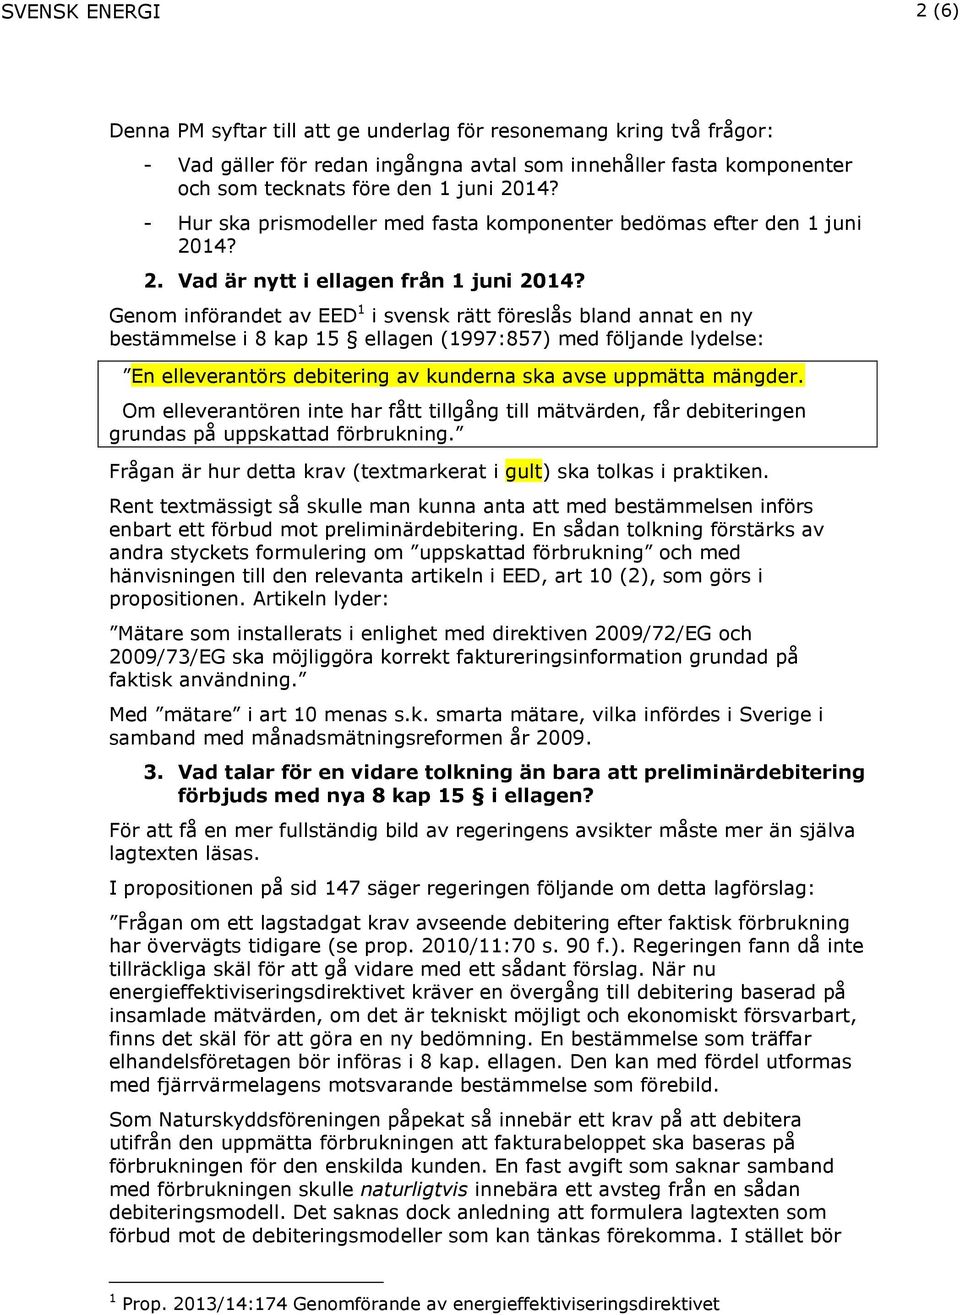 Genom införandet av EED 1 i svensk rätt föreslås bland annat en ny bestämmelse i 8 kap 15 ellagen (1997:857) med följande lydelse: En elleverantörs debitering av kunderna ska avse uppmätta mängder.